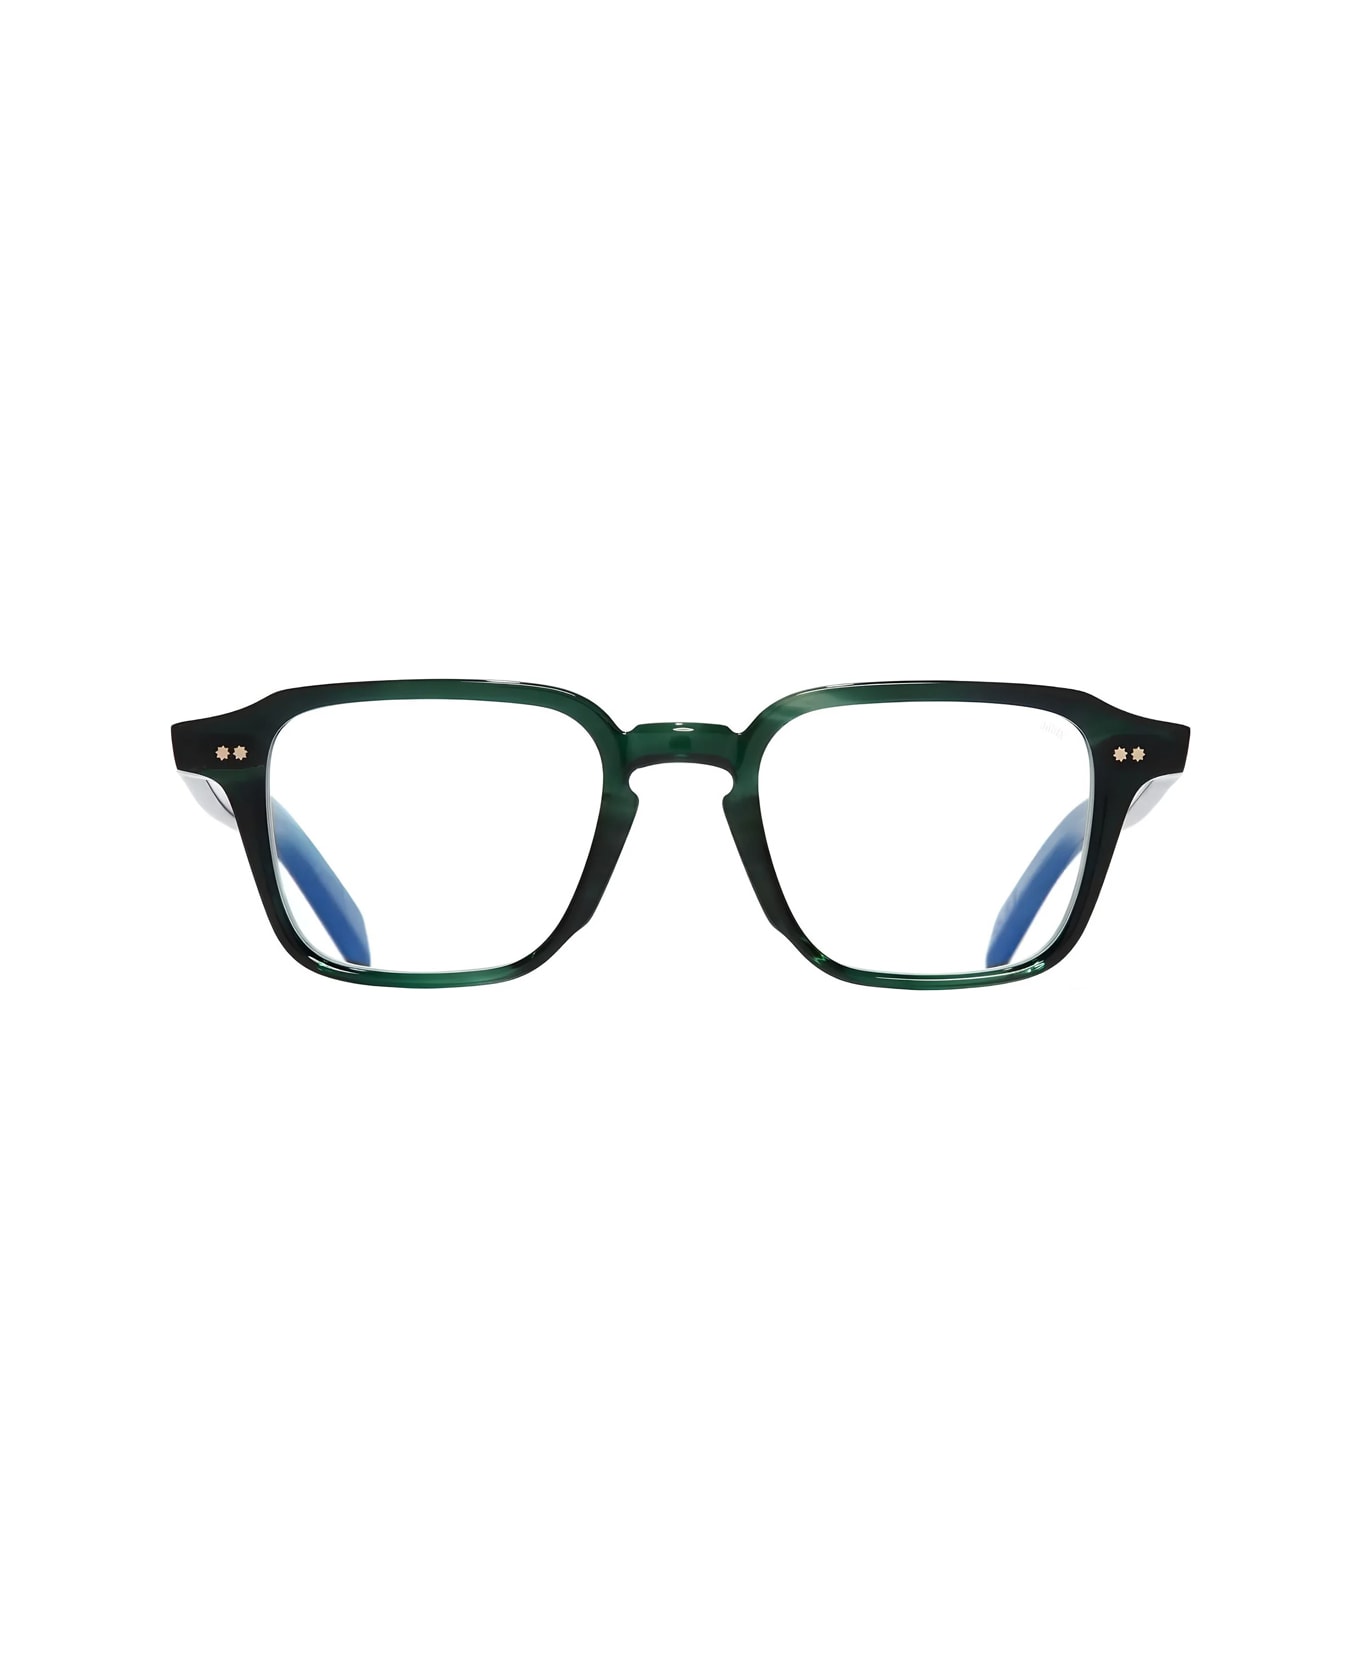 Cutler and Gross Gr07 03 Striped Dark Green Glasses - Verde